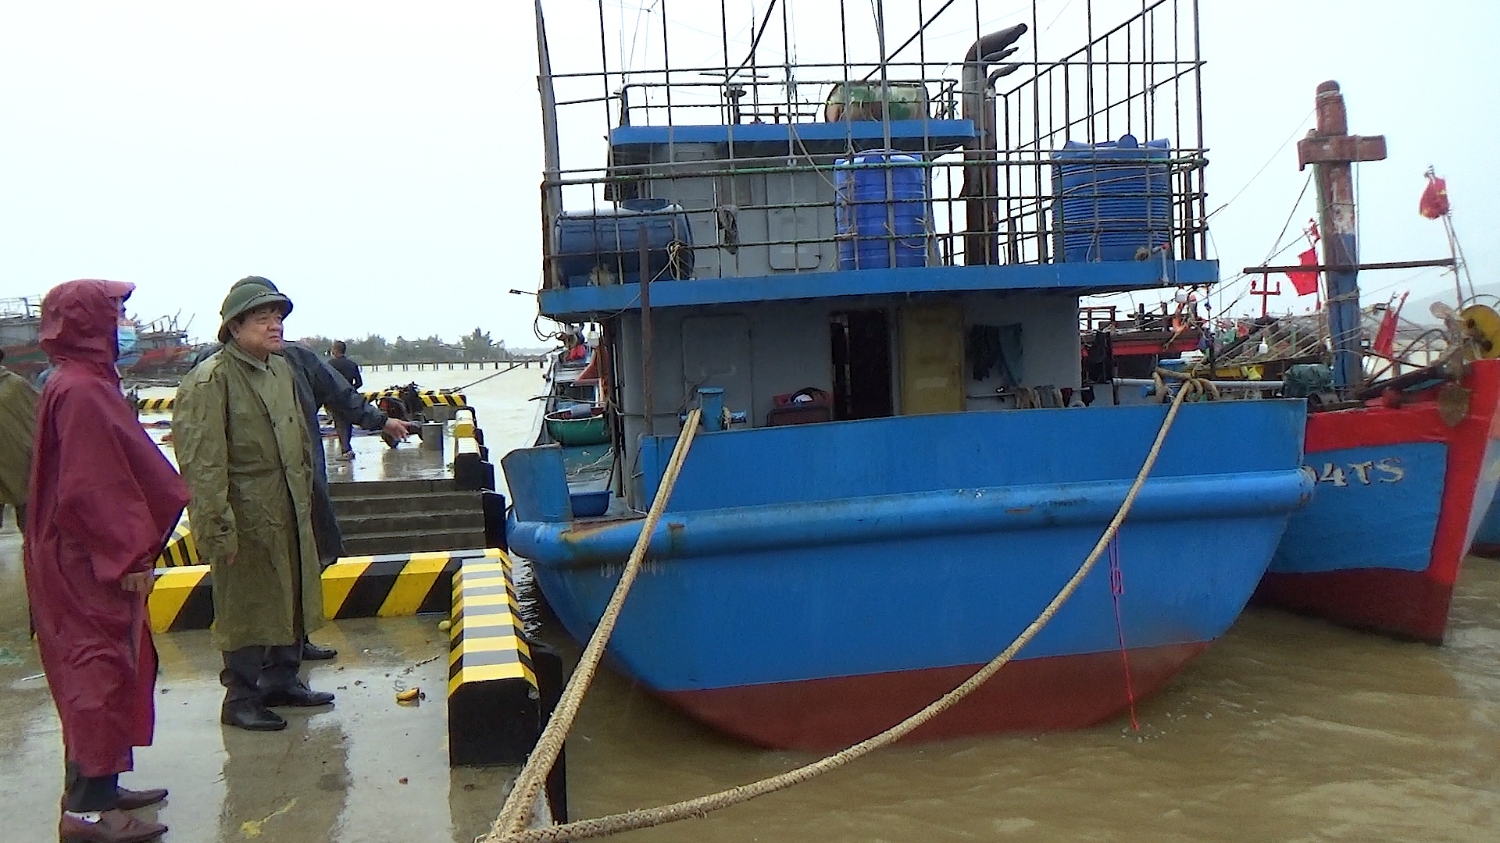 Đồng chí Đoàn Minh Thọ, Phó Bí thư Thị ủy, Chủ tịch UBND thị xã kiểm tra tình hình neo đậu tàu thuyền tại phường Quảng Phúc.